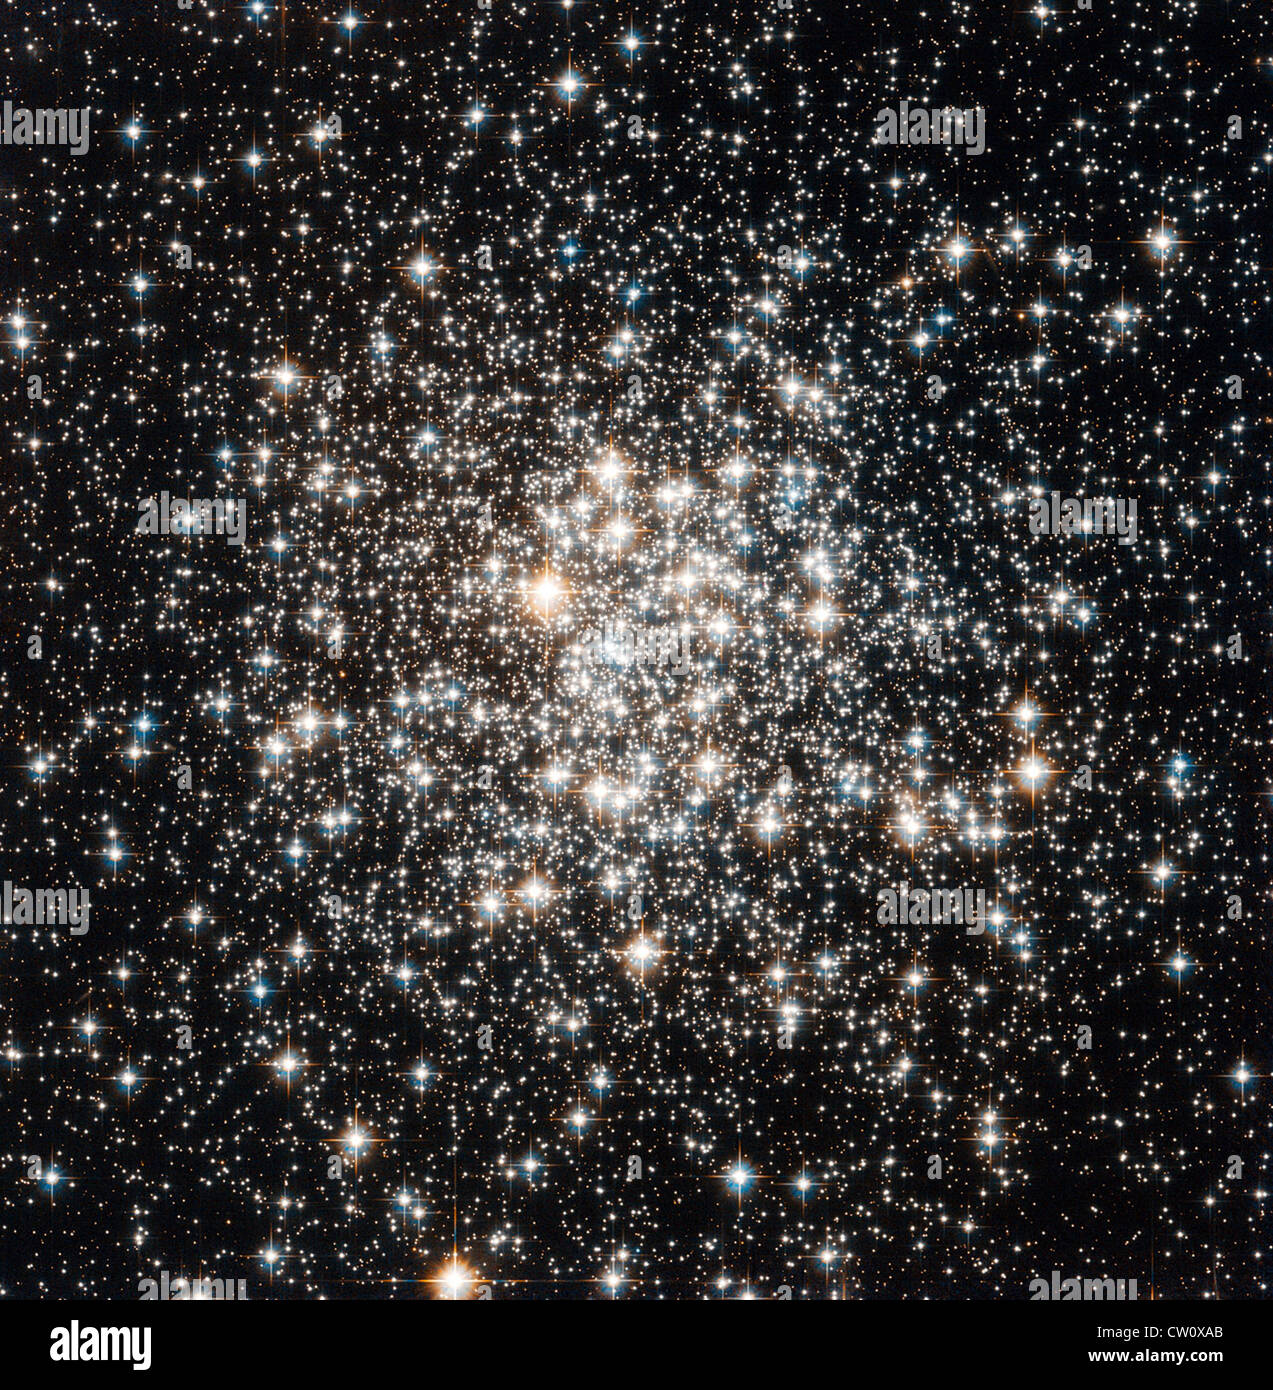 NASA/ESA Hubble Space Telescope hat eine Masse von Sternen im Sternbild Schlangenträger als Messier 107 bekannt erfasst. Stockfoto